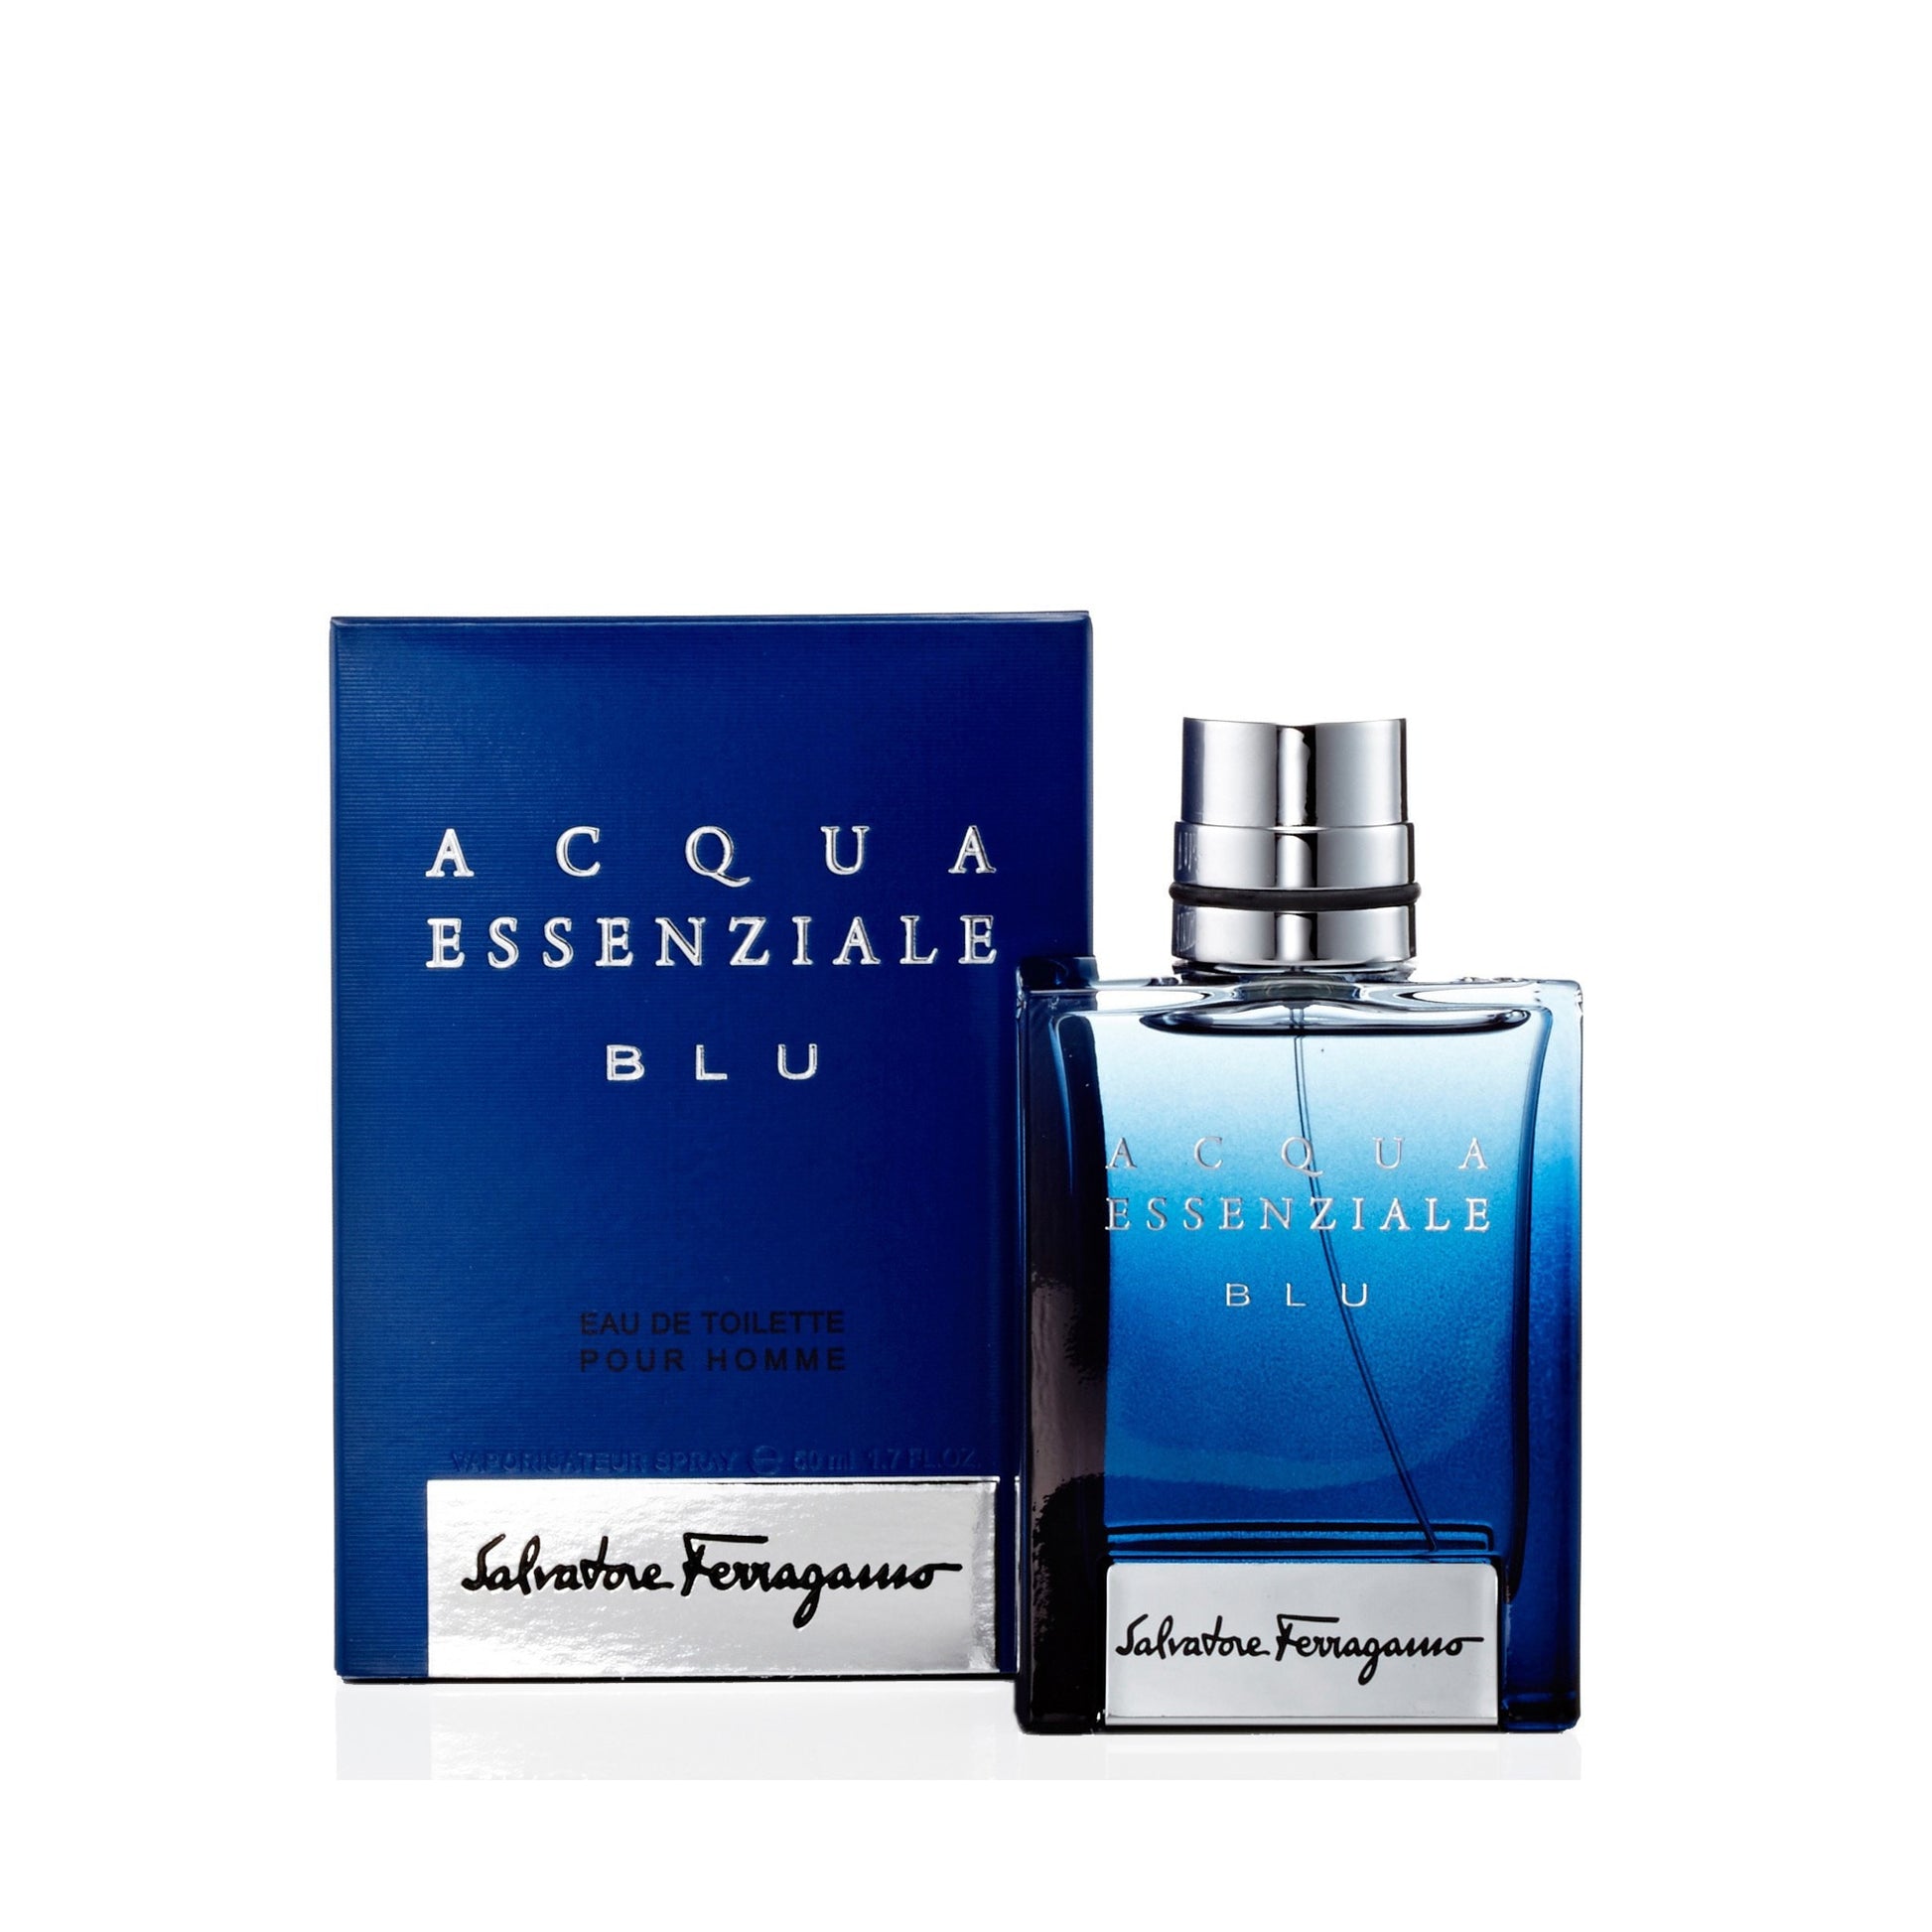 Acqua Essenziale Blu Eau de Toilette Spray for Men by Ferragamo 1.7 oz. Click to open in modal